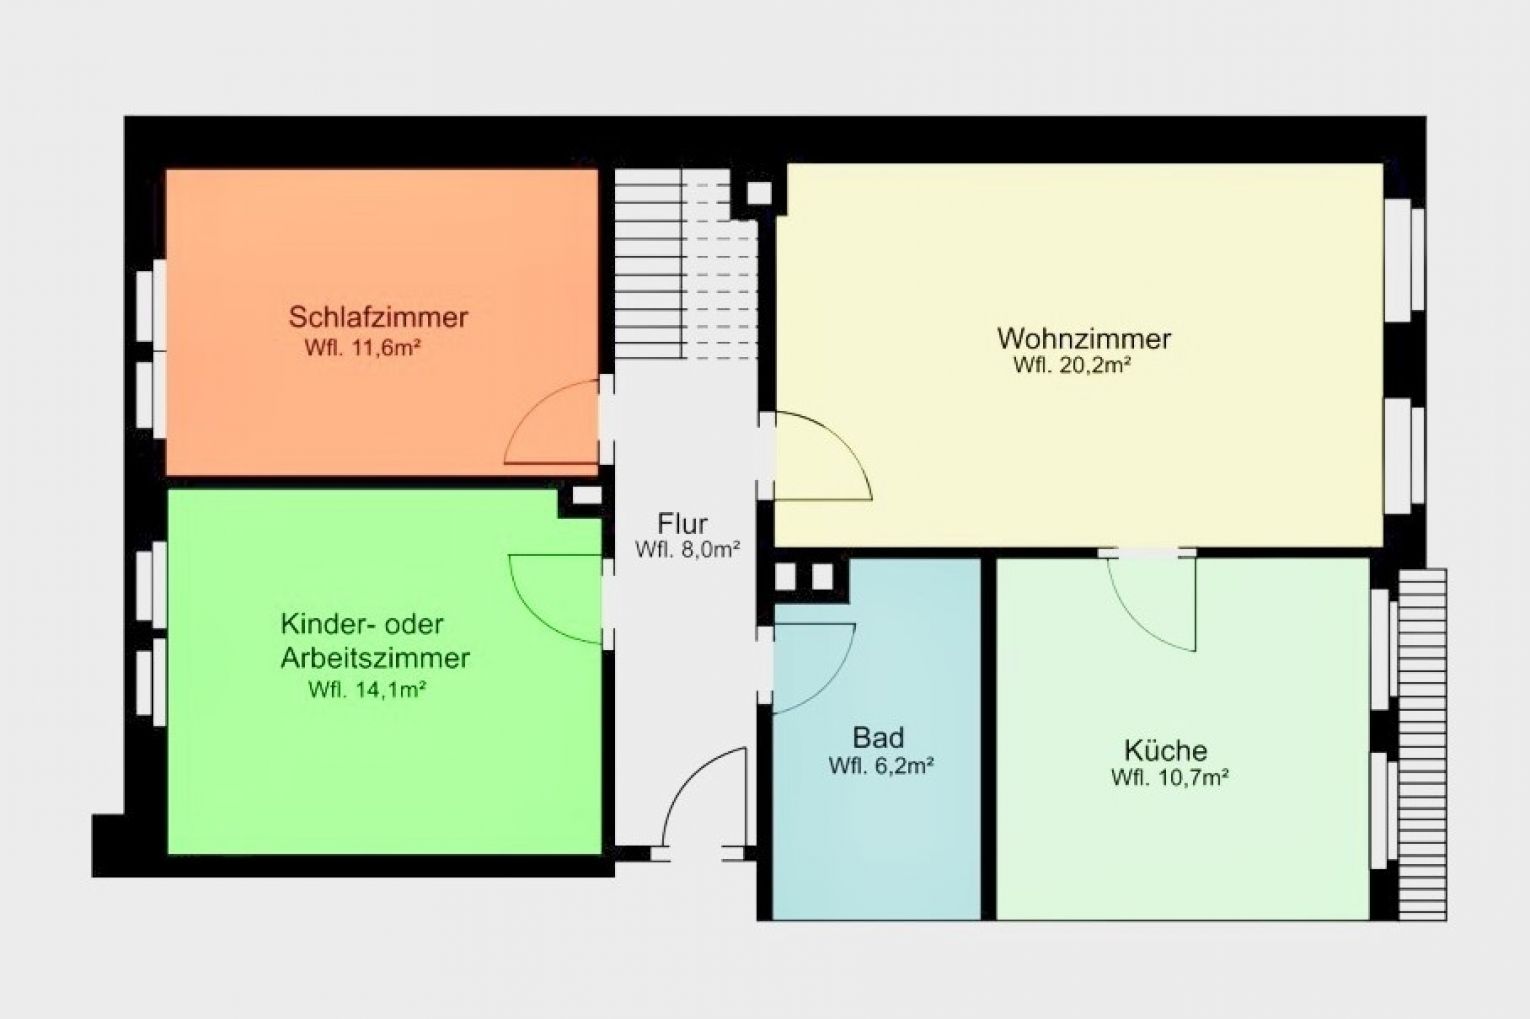 Dachterrasse mit tollem Ausblick • 4-Zimmer • Wohnküche • Laminat • Individuell einrichtbar